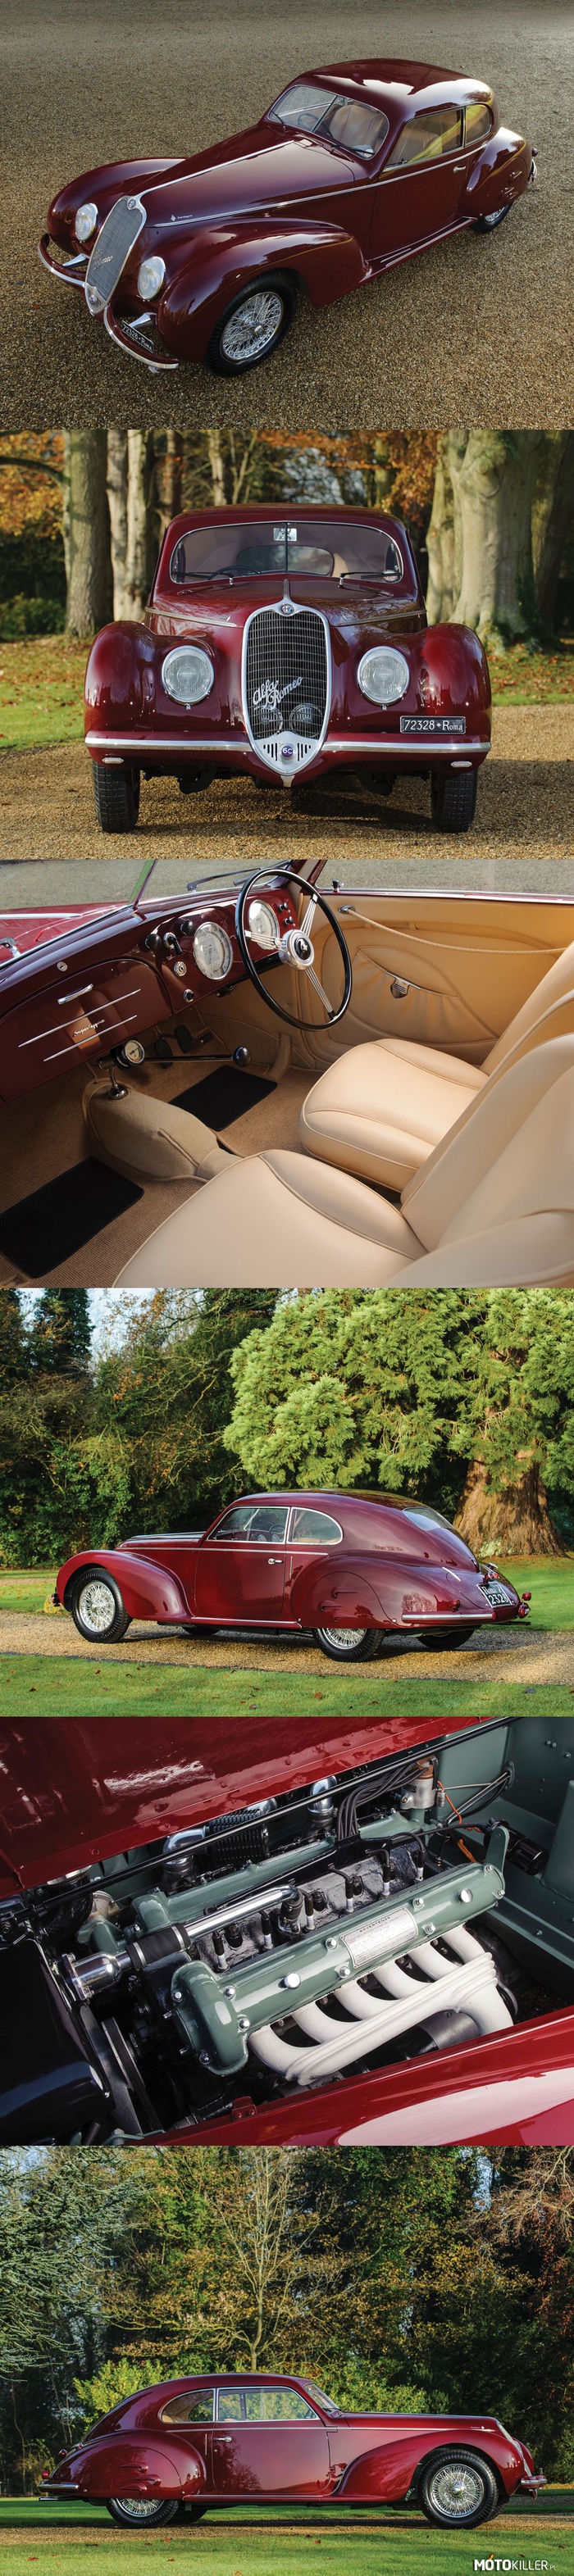 Alfa Romeo 6C2500 Sport – 1939 rok, silnik 2.5L, 6 cylindrowy na gaźnikach firmy Weber o mocy 110 KM. Samochód z bardzo ciekawą i mroczną historią. Ten konkretnie wóz był podarunkiem, który Benito Mussolini złożył swojej wieloletniej kochance, Clarze Petacci. Również ta Alfa towarzyszyła im w próbie ucieczki do Szwajcarii, zakończonej niepowodzeniem – rozpoznaniem przez partyzantów, aresztowaniem, egzekucją i publicznym wywieszeniem ciał. Teraz ma być sprzedana za ok. 8-10 milionów złotych… i szokujący może być fakt, że w roku 1970 Alfa zmieniła właściciela za marne 300 dolarów. 